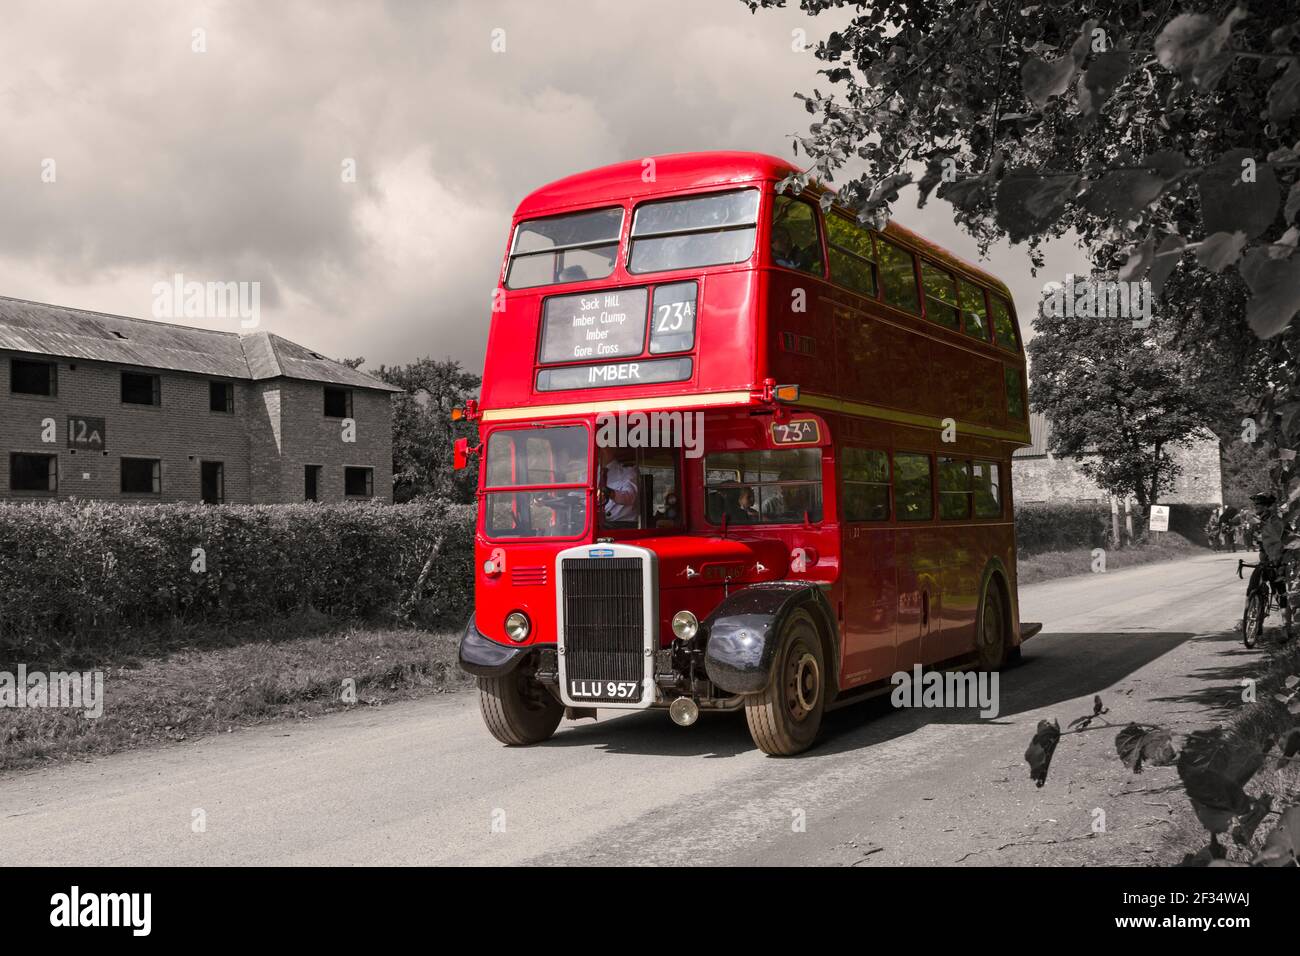 Roter Doppeldecker Routemaser Bus nach Imber am Tag der offenen Tür, Imberbus Veranstaltung in Imber, Salisbury Plain, Wiltshire UK im August Stockfoto